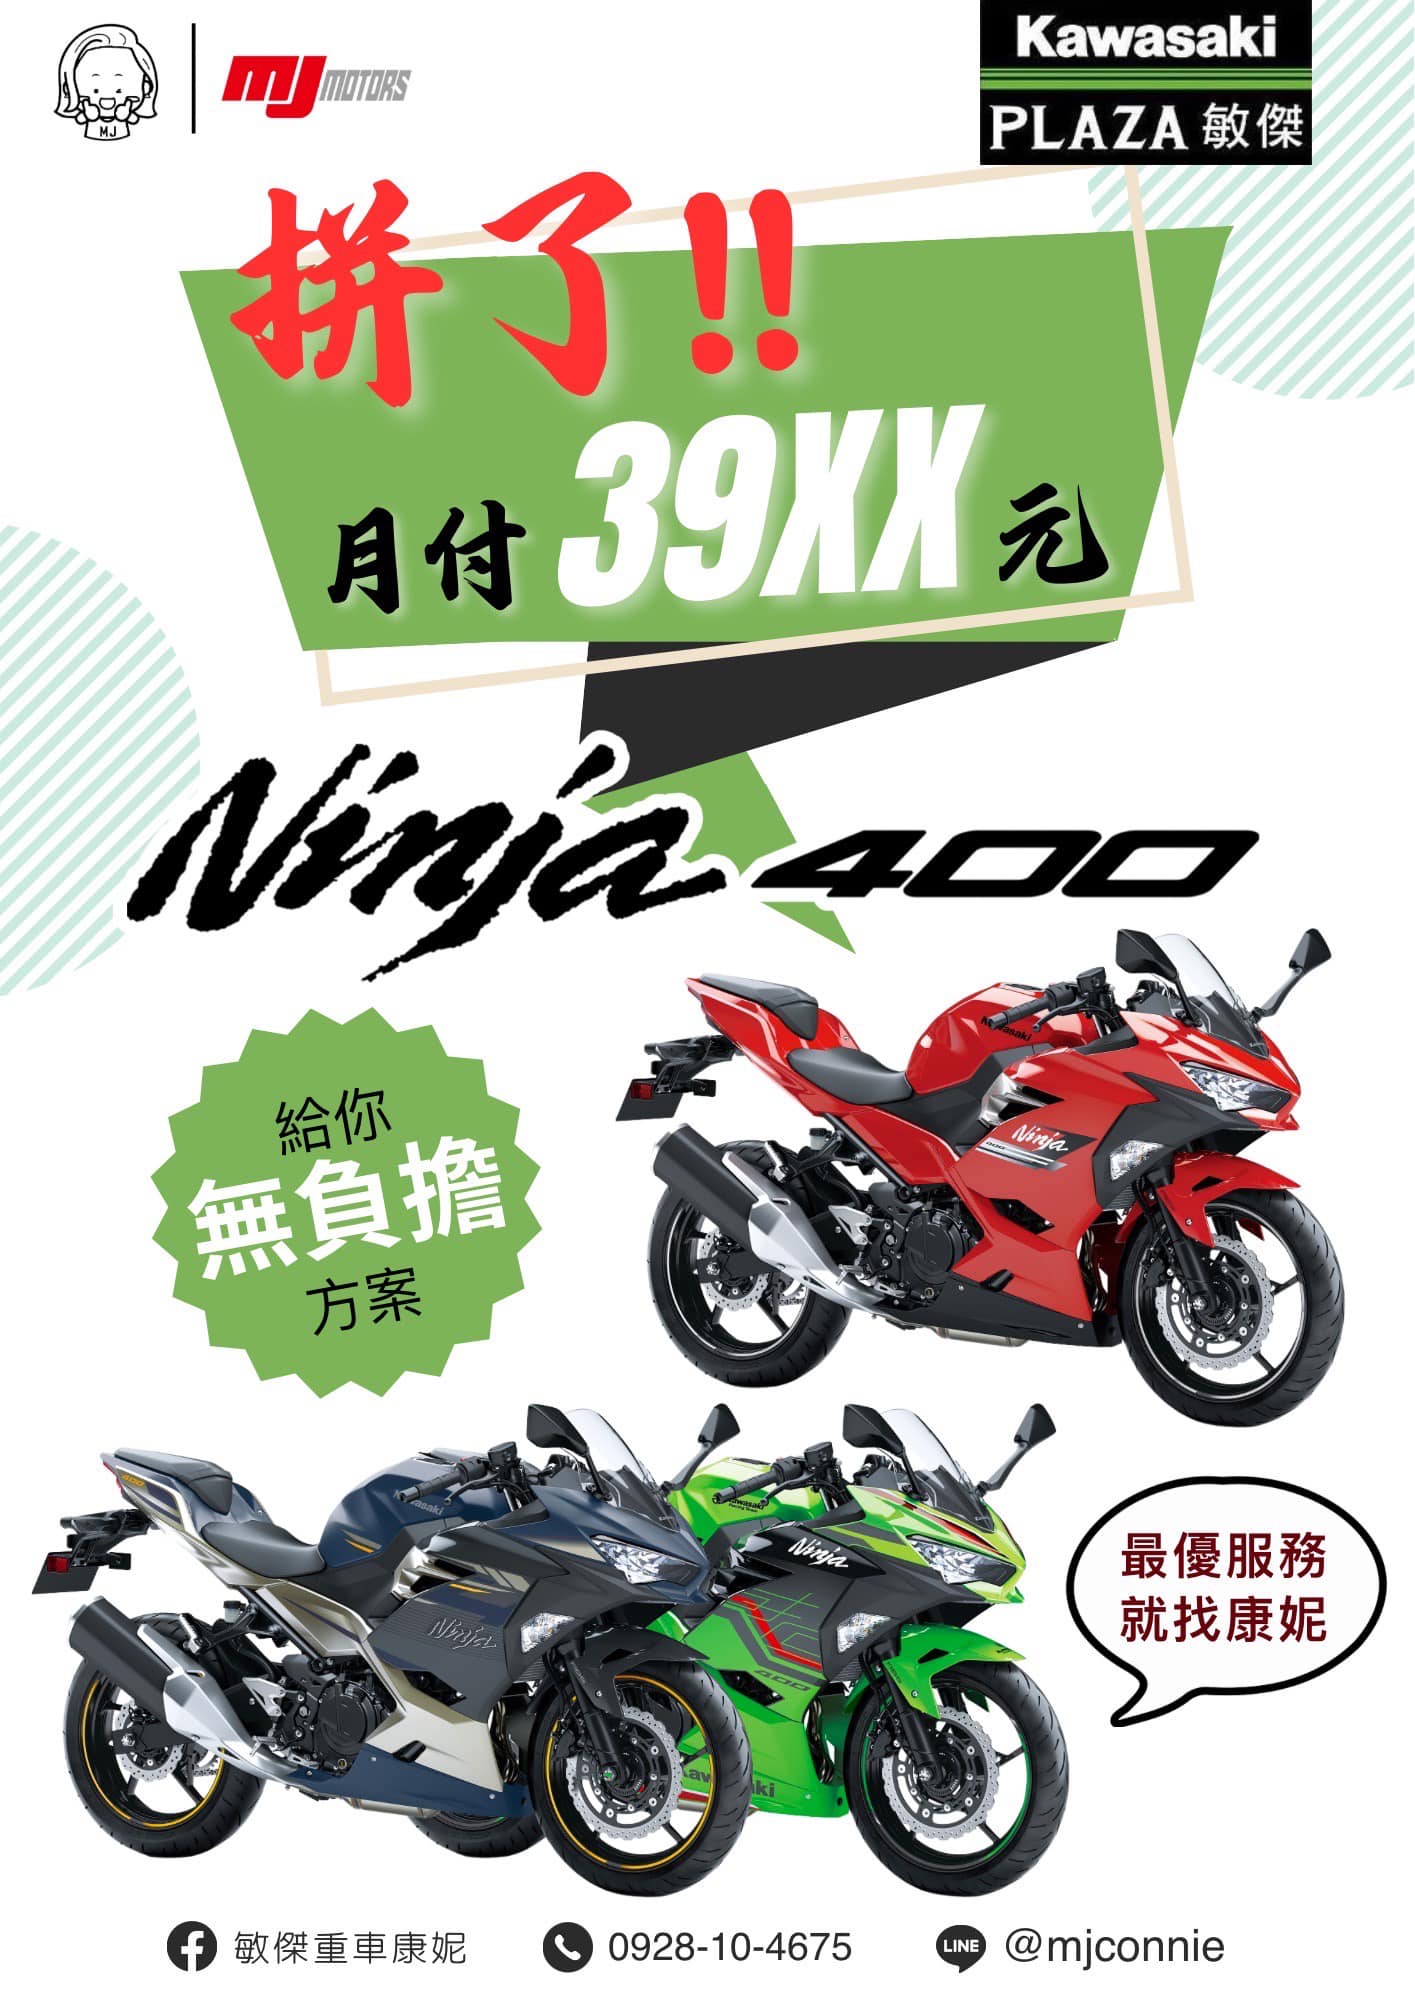 【敏傑車業資深銷售專員 康妮 Connie】KAWASAKI NINJA400 - 「Webike-摩托車市」 『敏傑康妮』Kawasaki Ninja400 月繳39xx!!! 最後一波好康!! 就是要你繳得無感